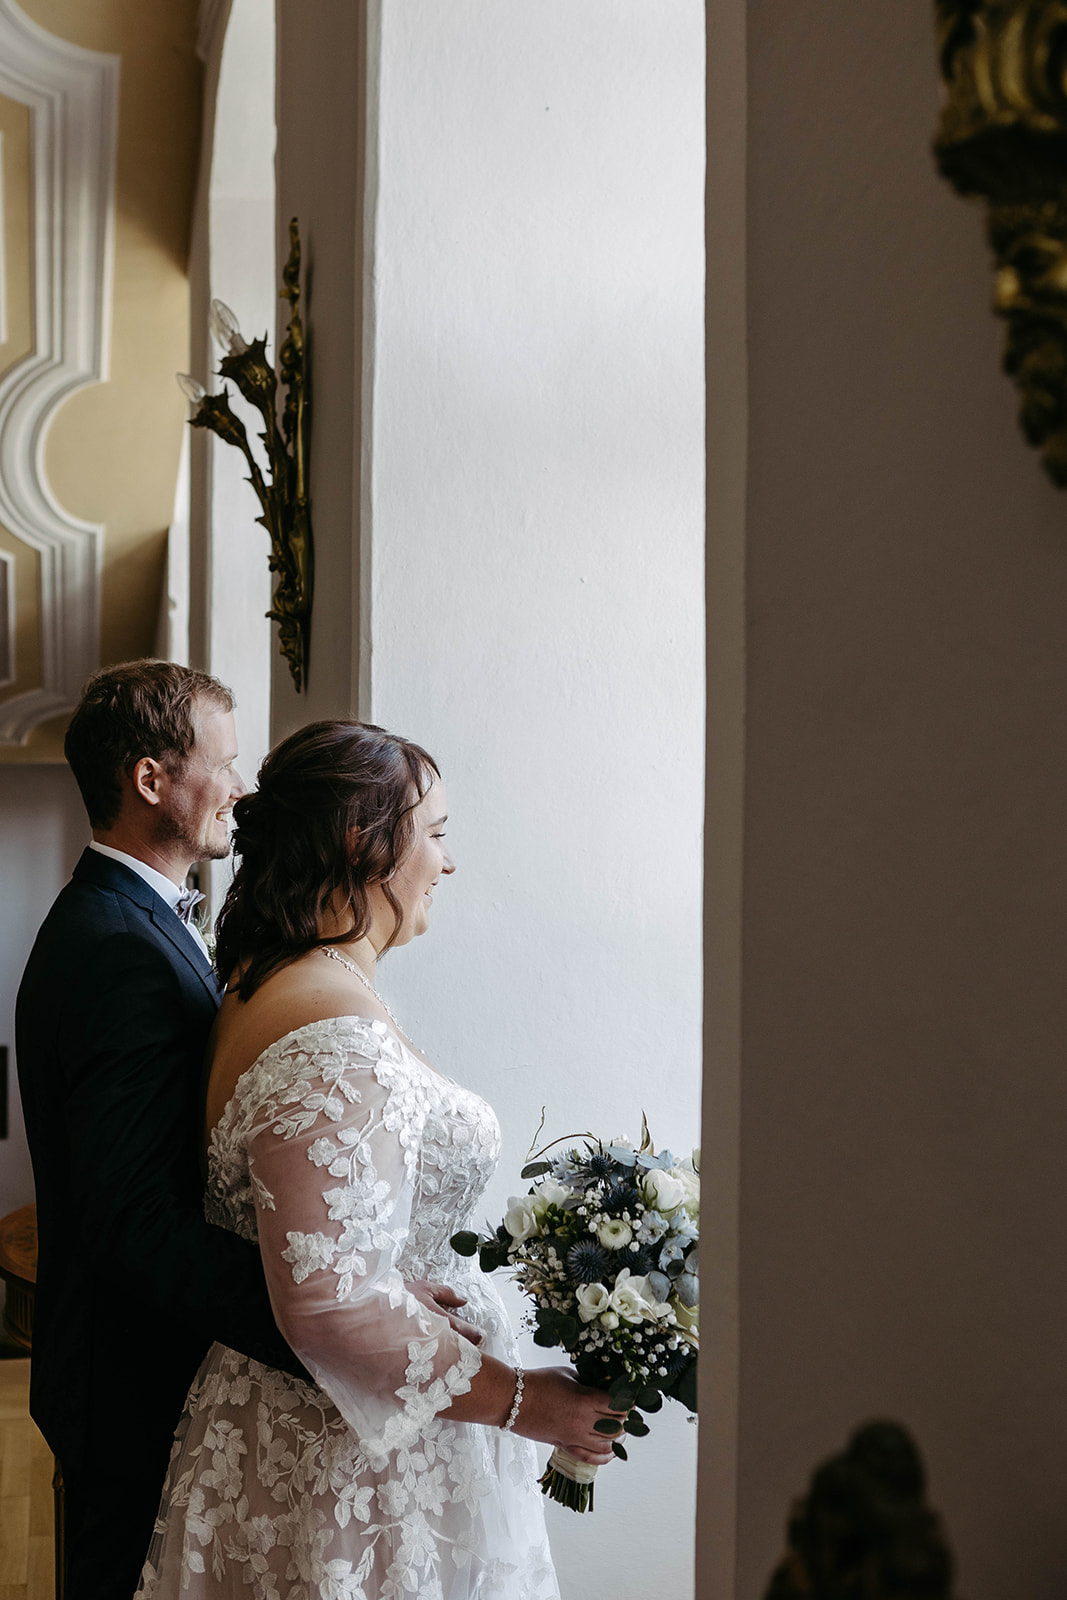 Romantisches Szenario: Der Bräutigam steht zärtlich hinter der Braut, beide genießen den Ausblick aus dem Fenster des Sc